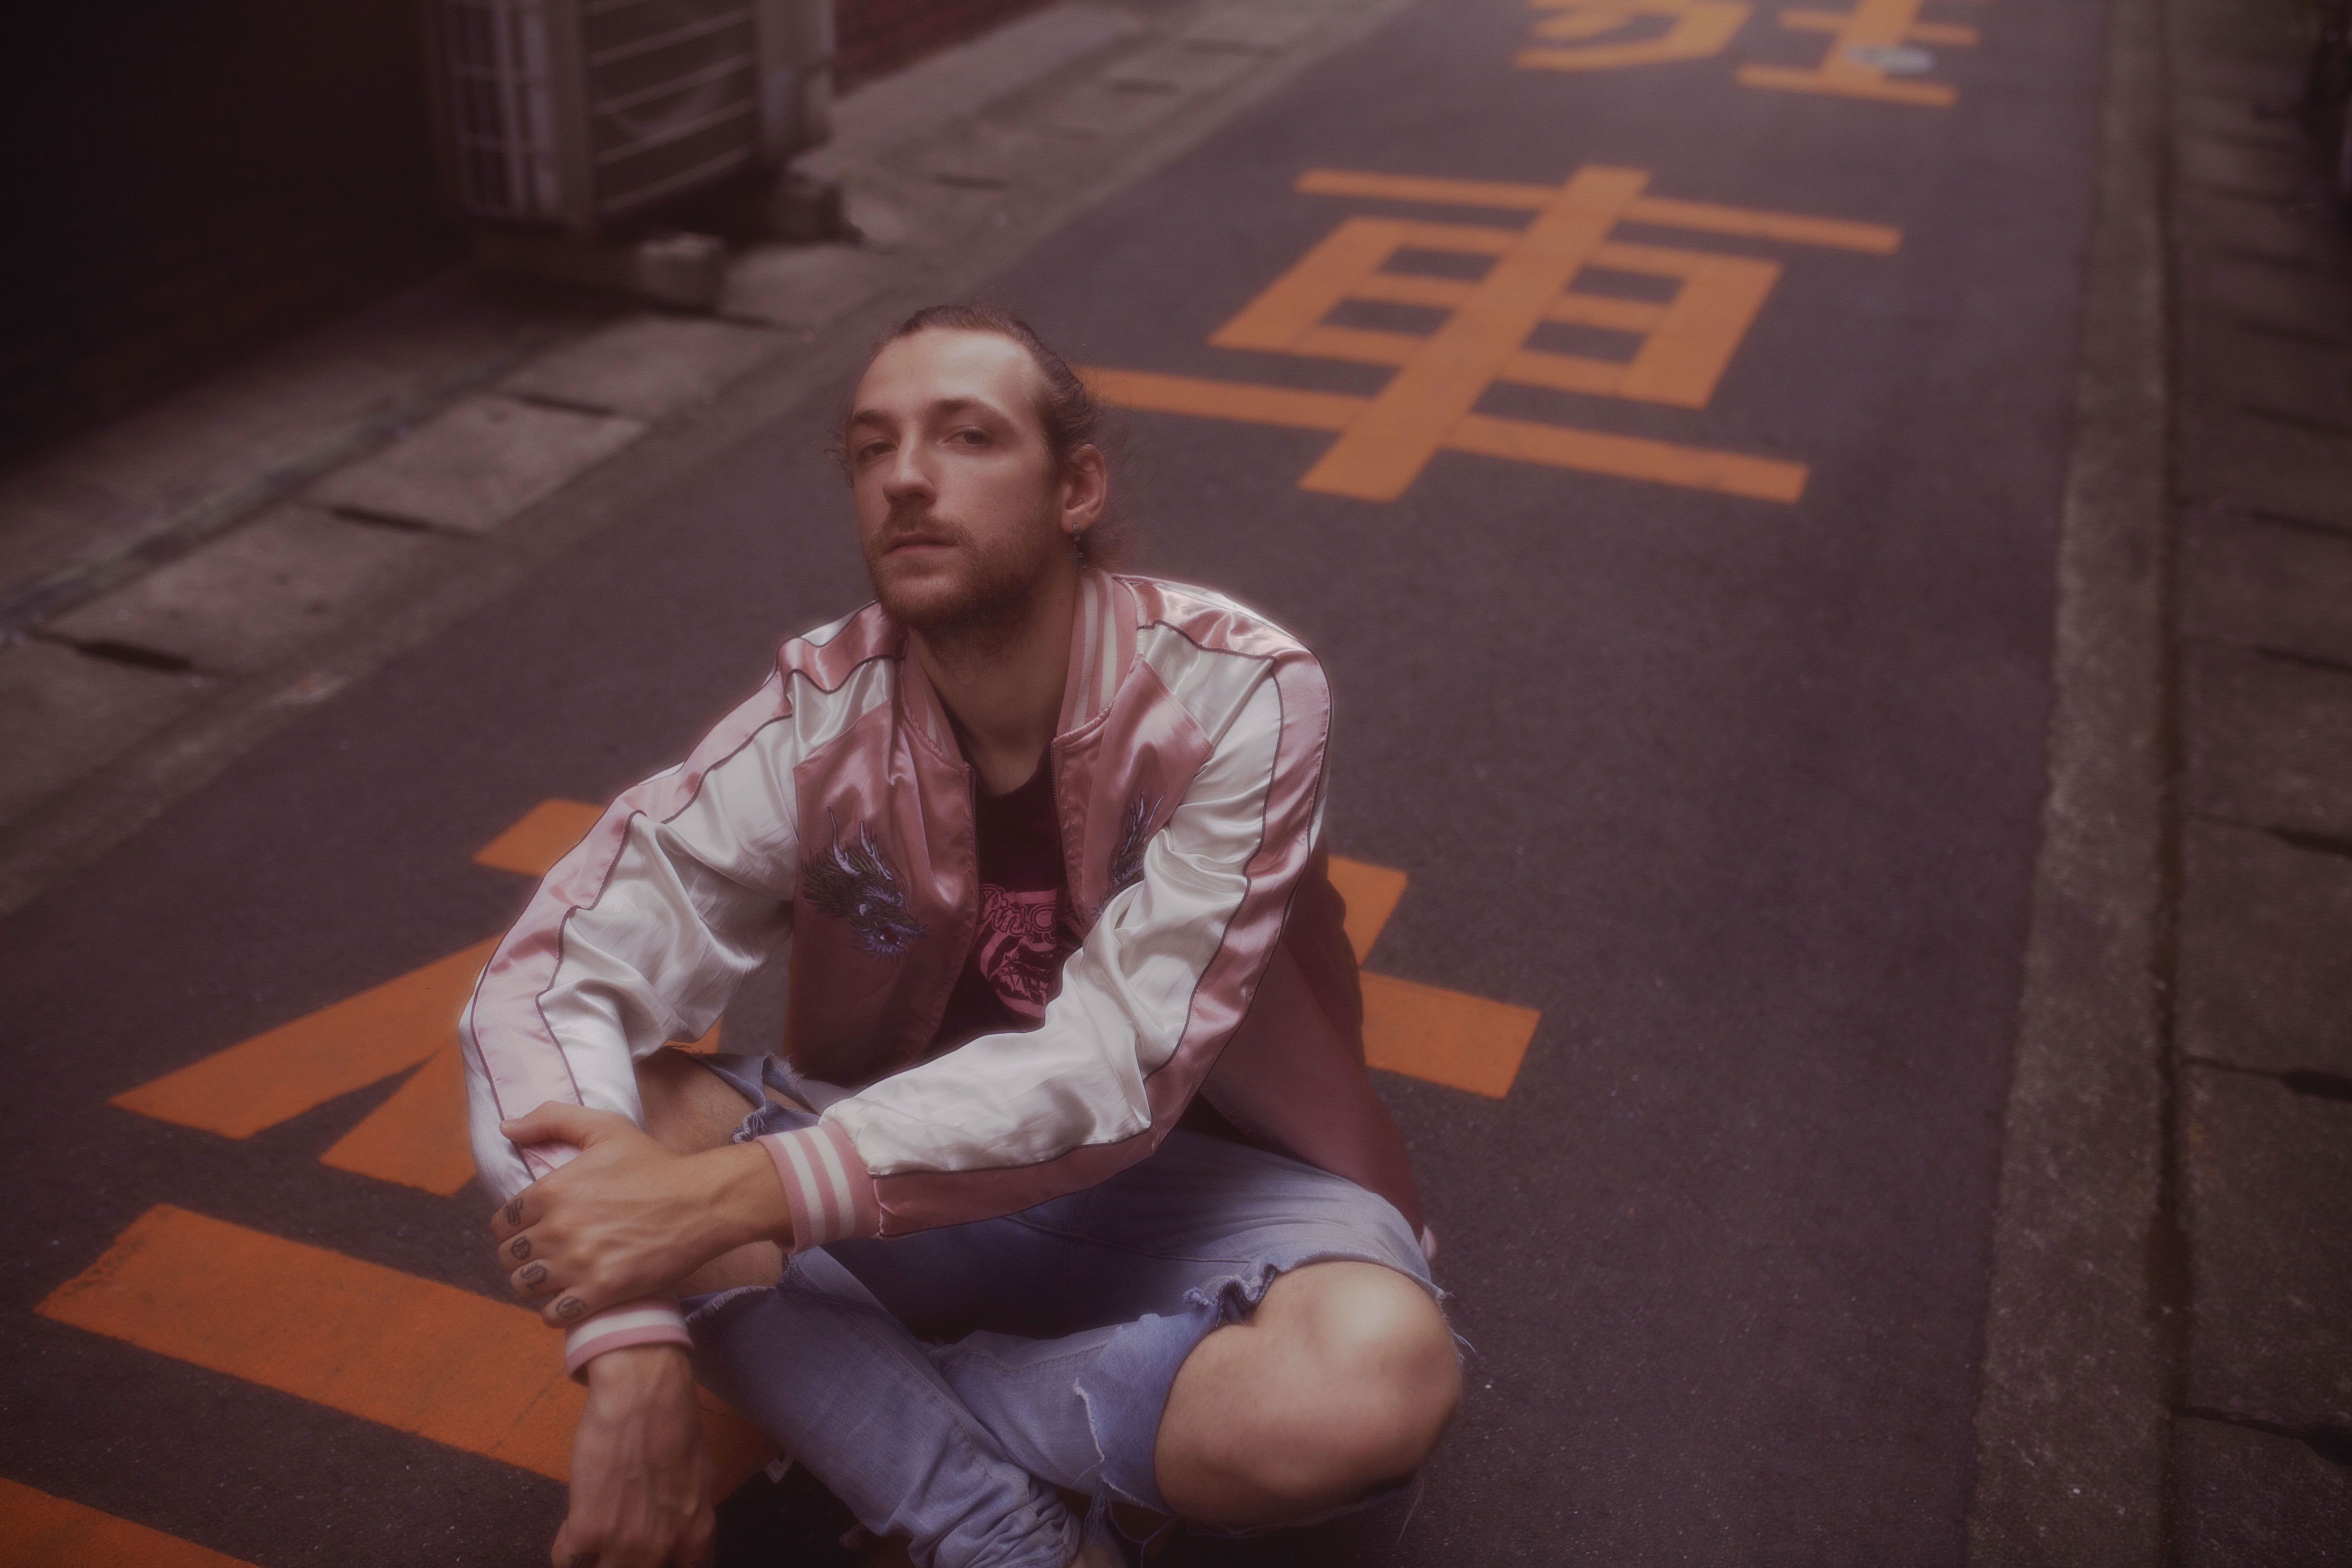 portrait d'un homme dans une rue au japon